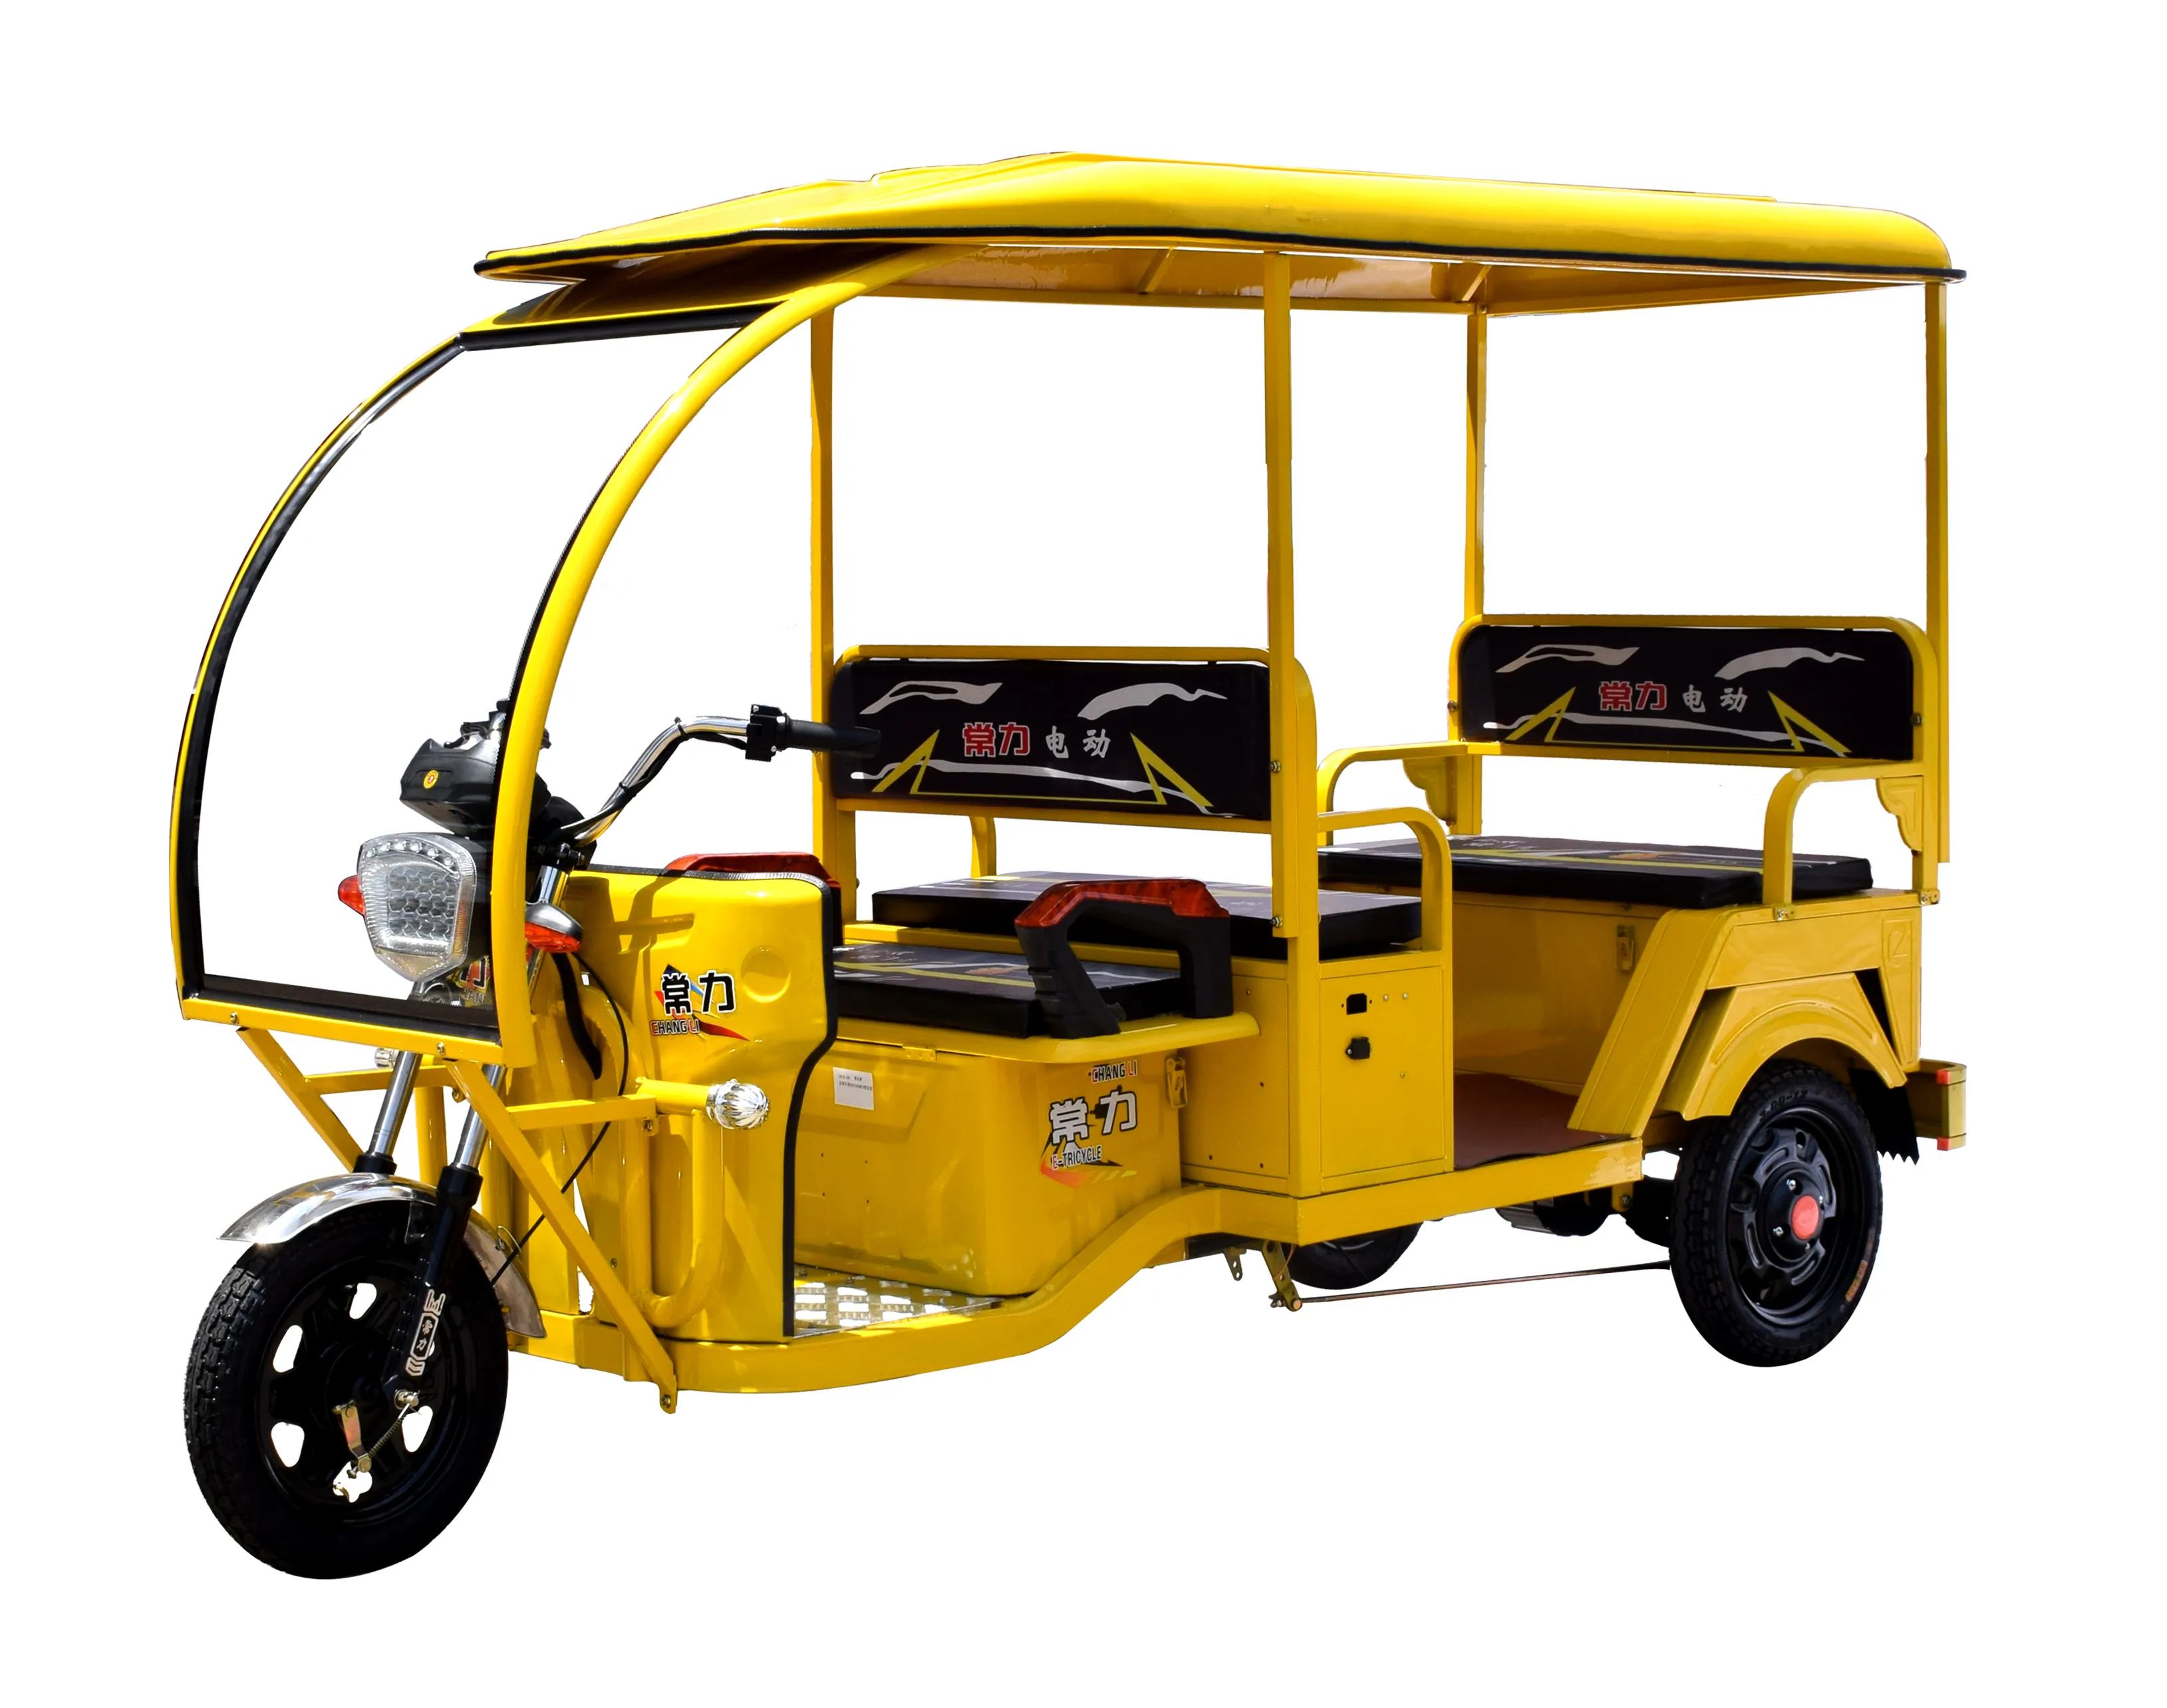 कराची में 3 पहिया वयस्क बिजली रिक्शा रिक्शा तीन पहिया इलेक्ट्रिक रिक्शा tuktuk